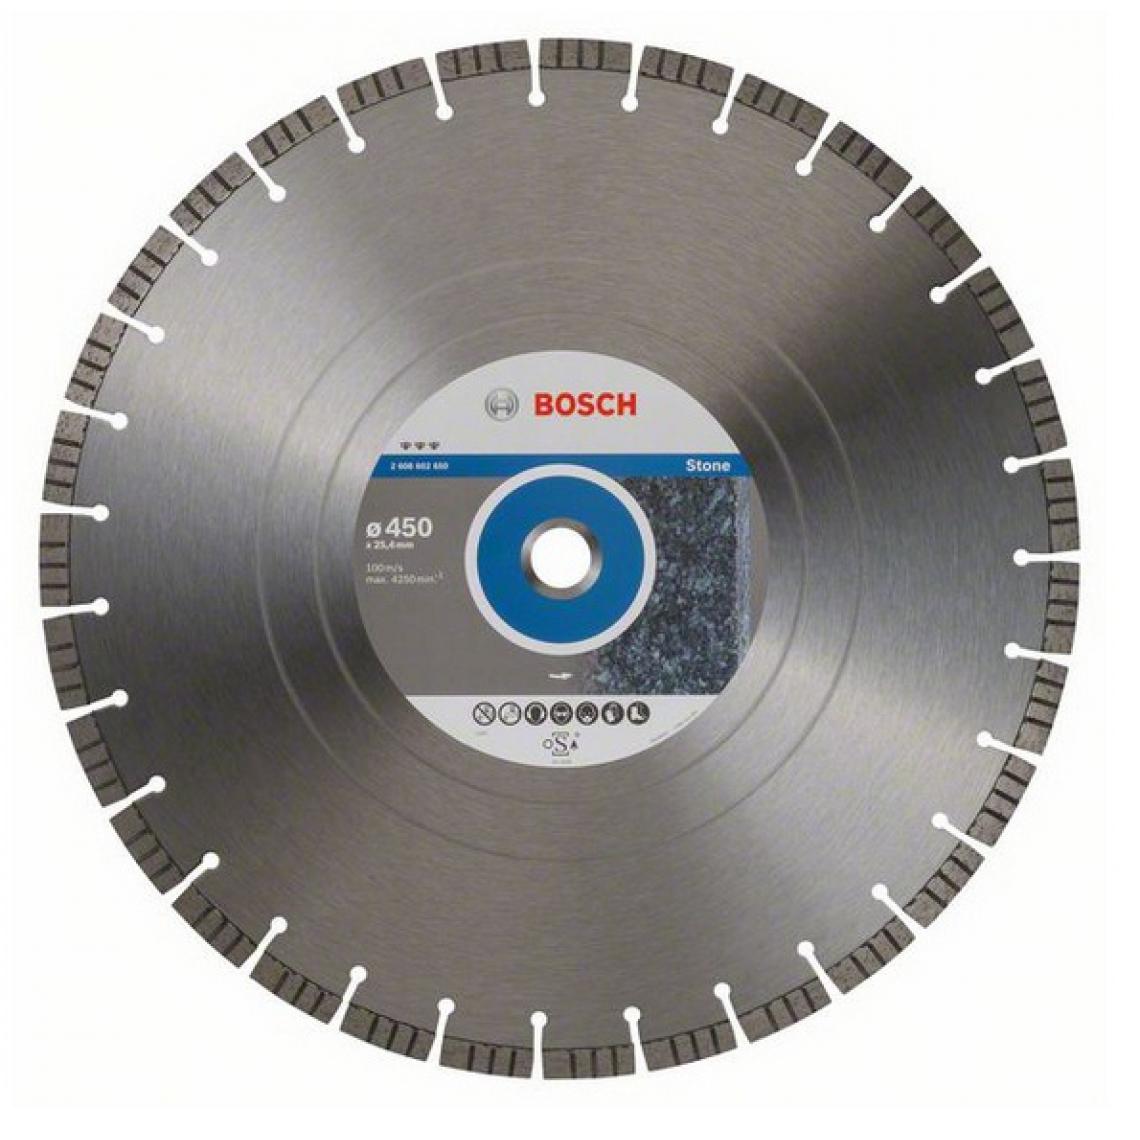 Bosch - Bosch Home and Garden - Disque à tronçonner diamanté Best for Stone 450x25,4x12mm - Accessoires meulage